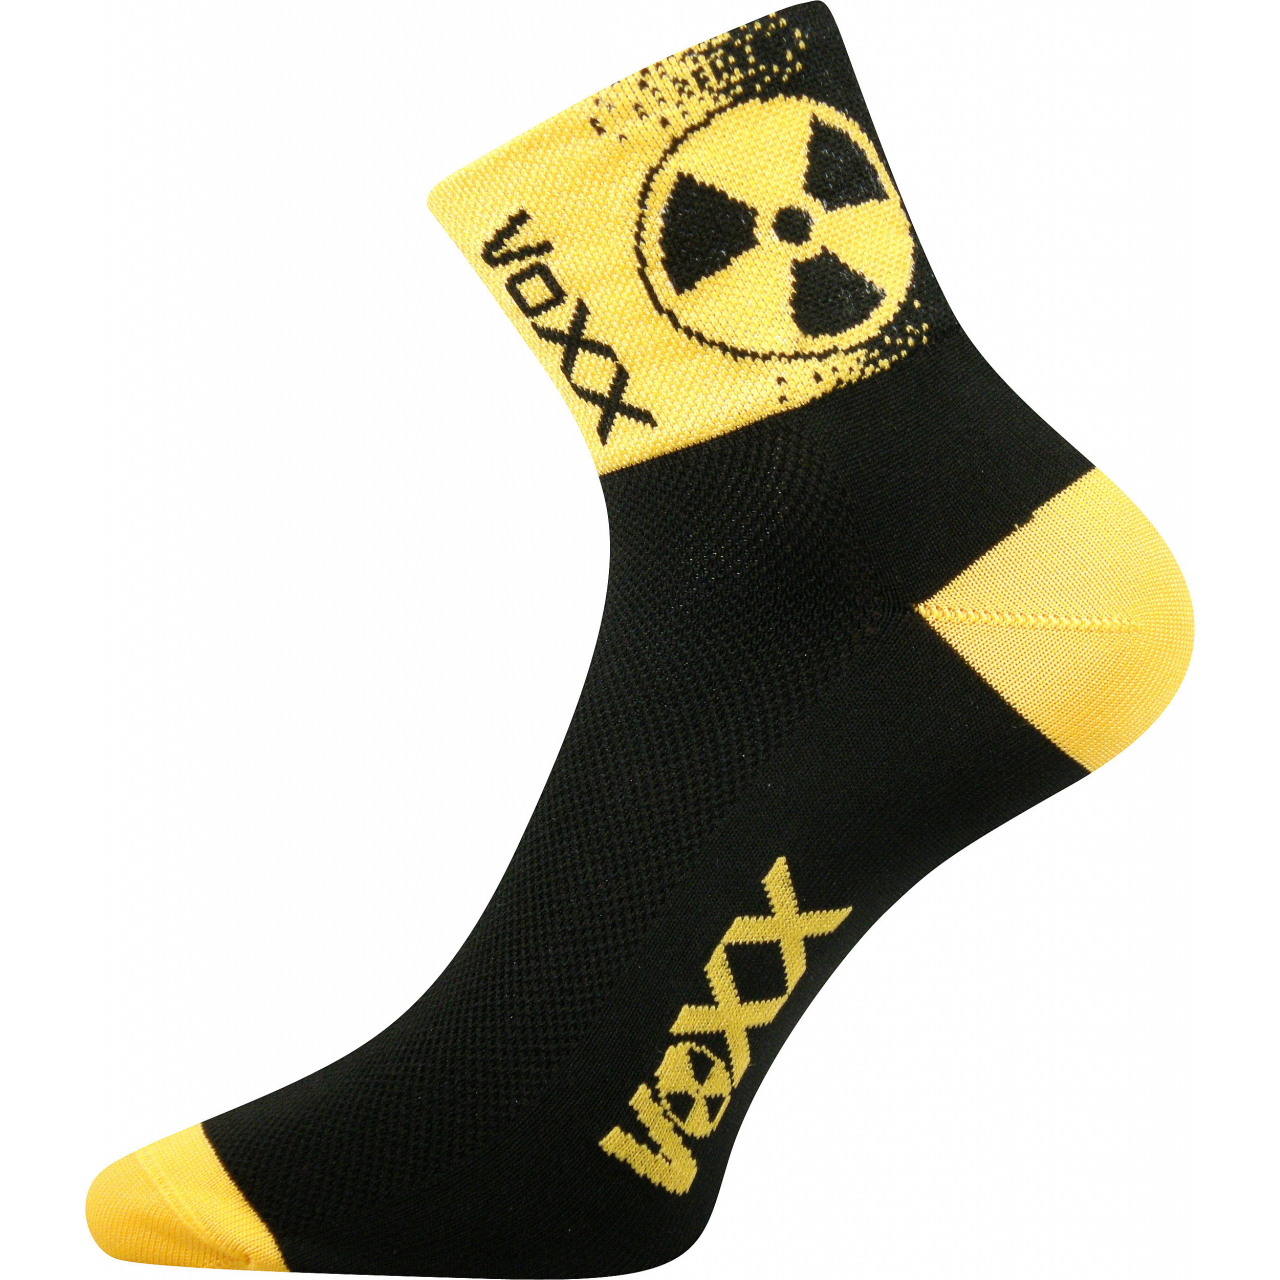 Ponožky sportovní unisex Voxx Ralf X Radiace - černé-žluté, 43-46